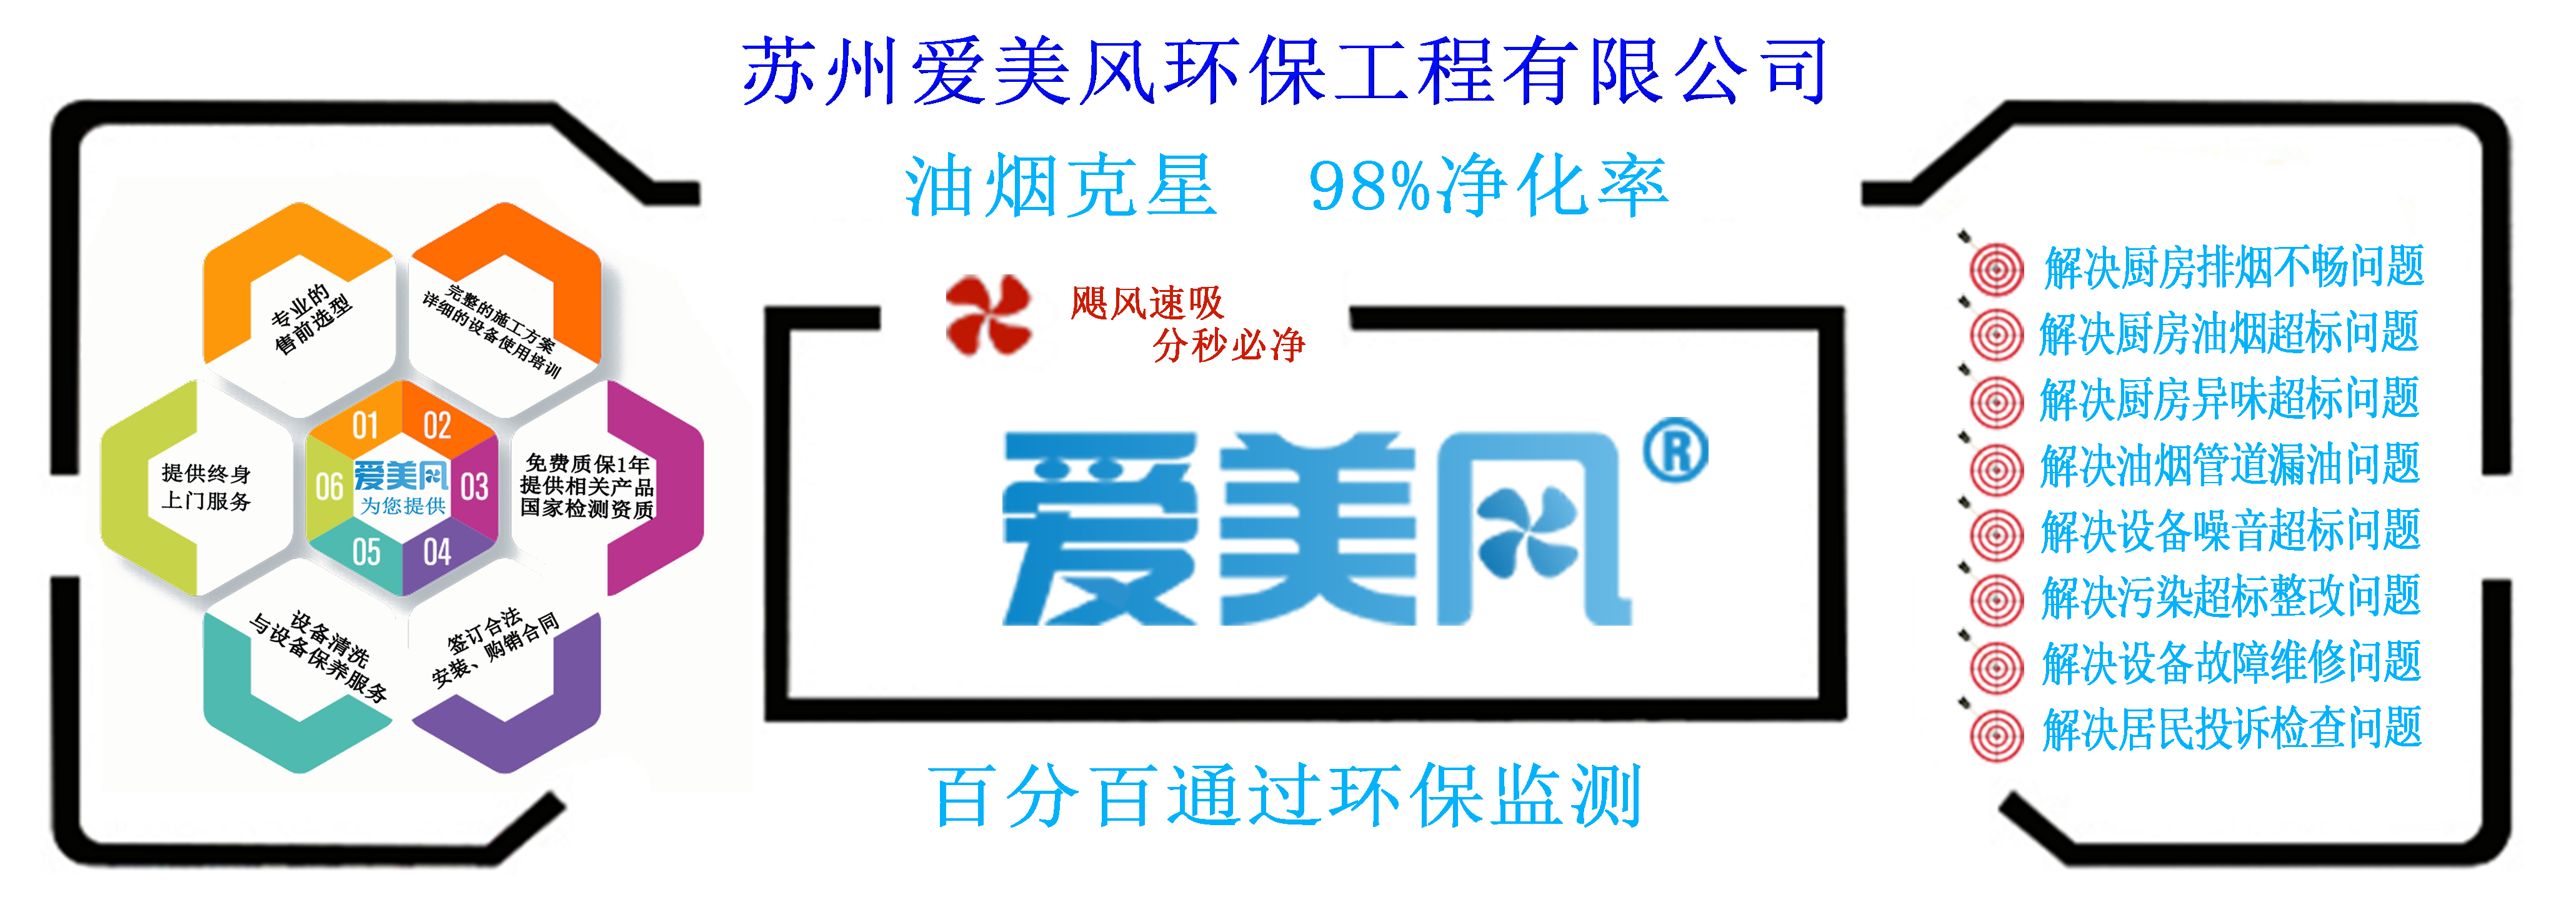 bwin·必赢(中国)唯一官方网站_项目604